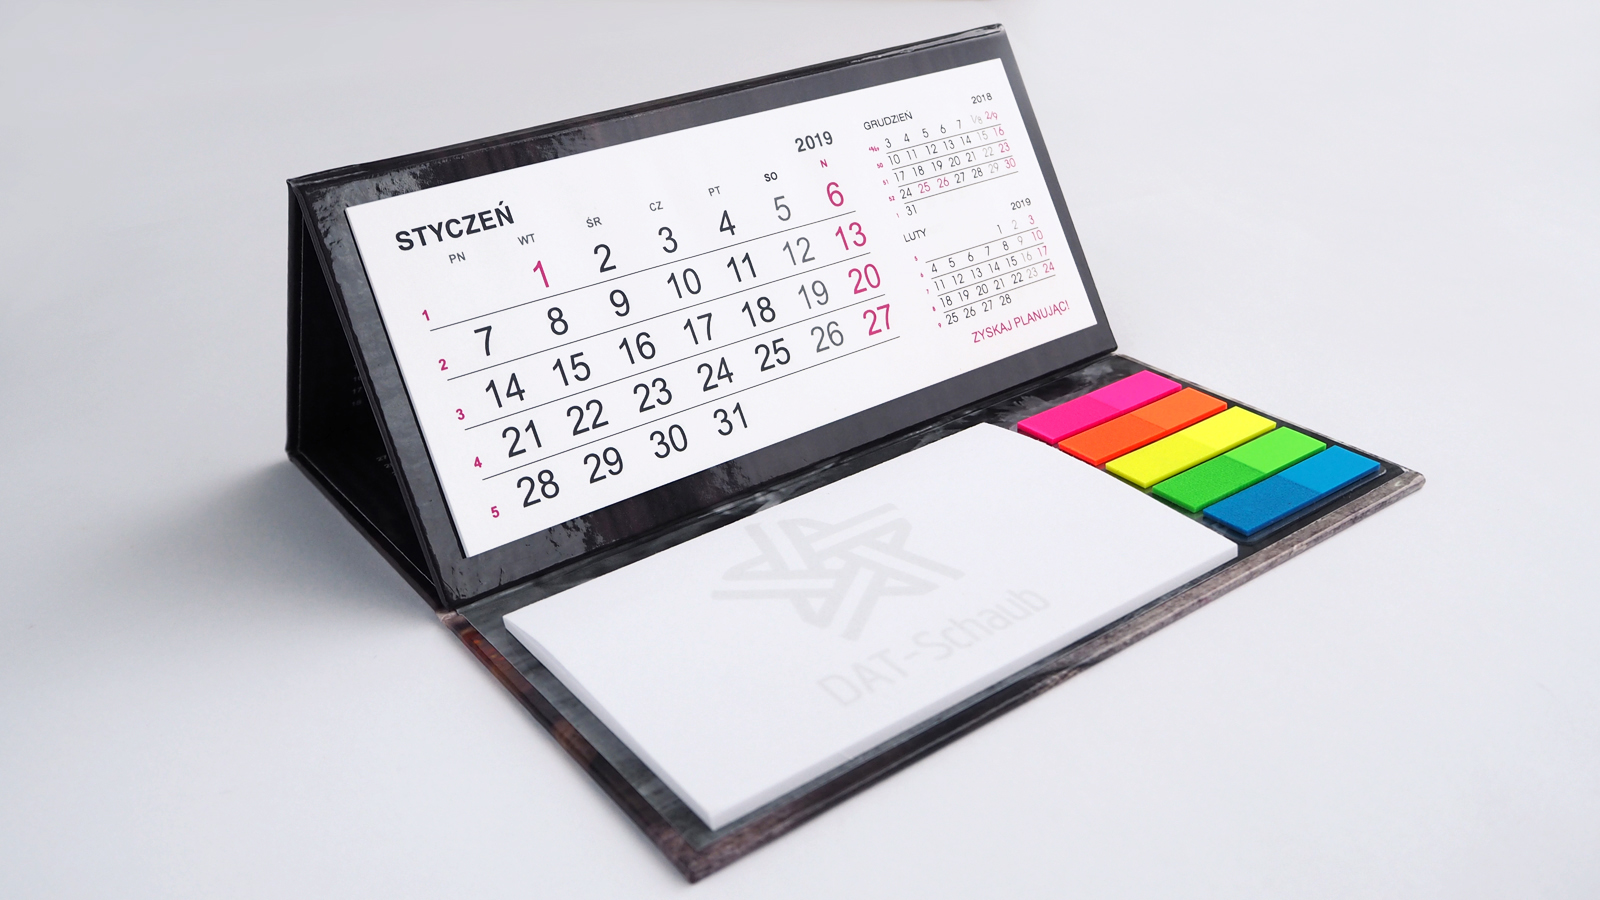 DAT-Schaub – kalendarz biurkowy stojący (piramidka) z notesem i znacznikami oraz kalendarz czterodzielny z wypukłą główką